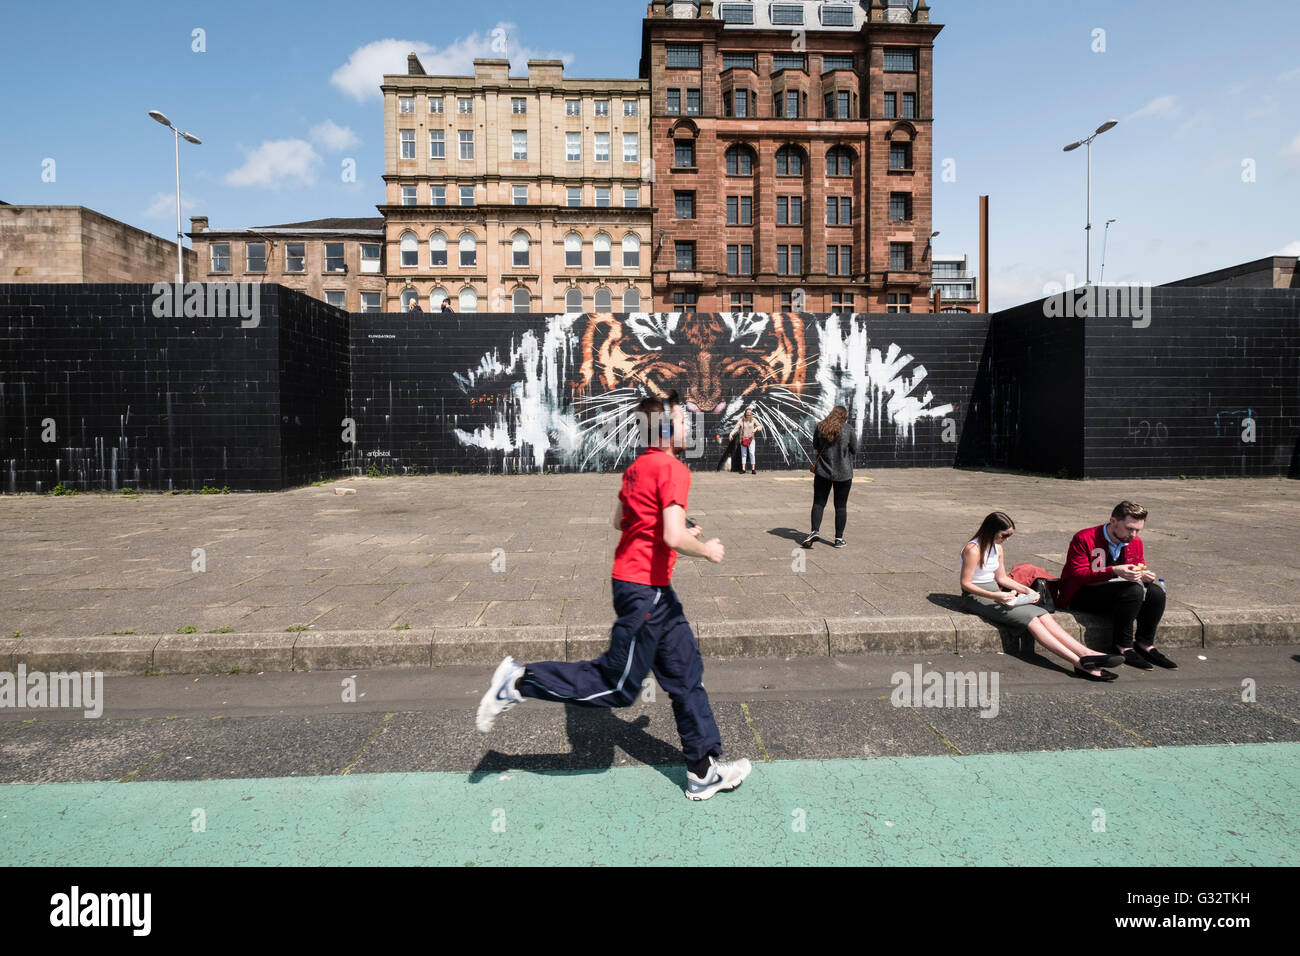 Scène de rue avec l'art de rue dans le passage libre au bord de la rivière Clyde dans le centre de Glasgow, Ecosse, Royaume-Uni Banque D'Images